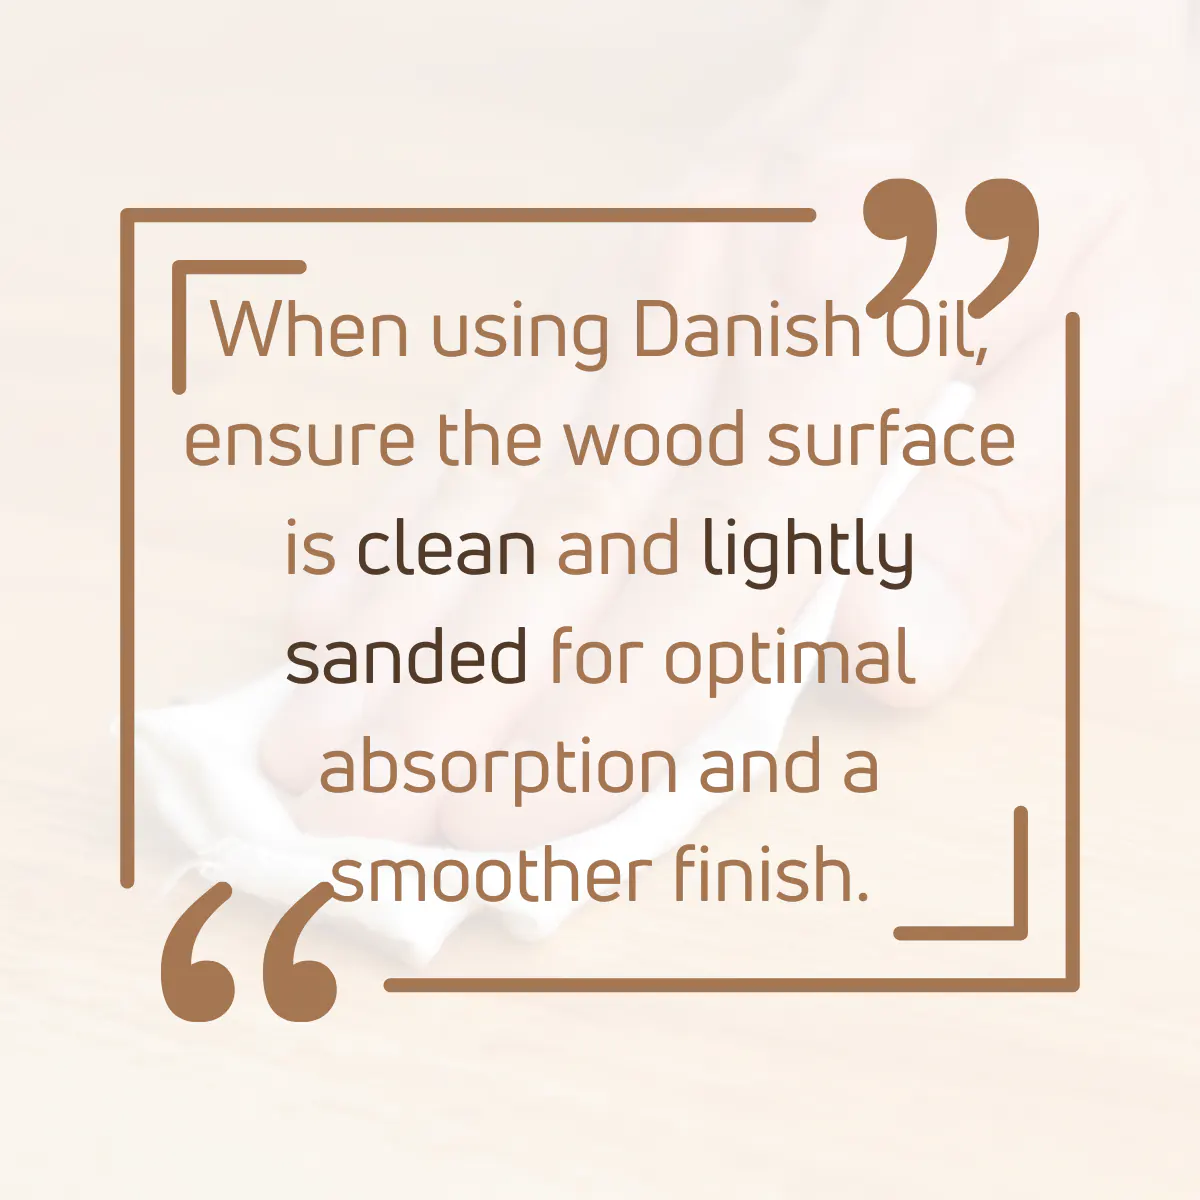 Tip for using Danish oil on wood